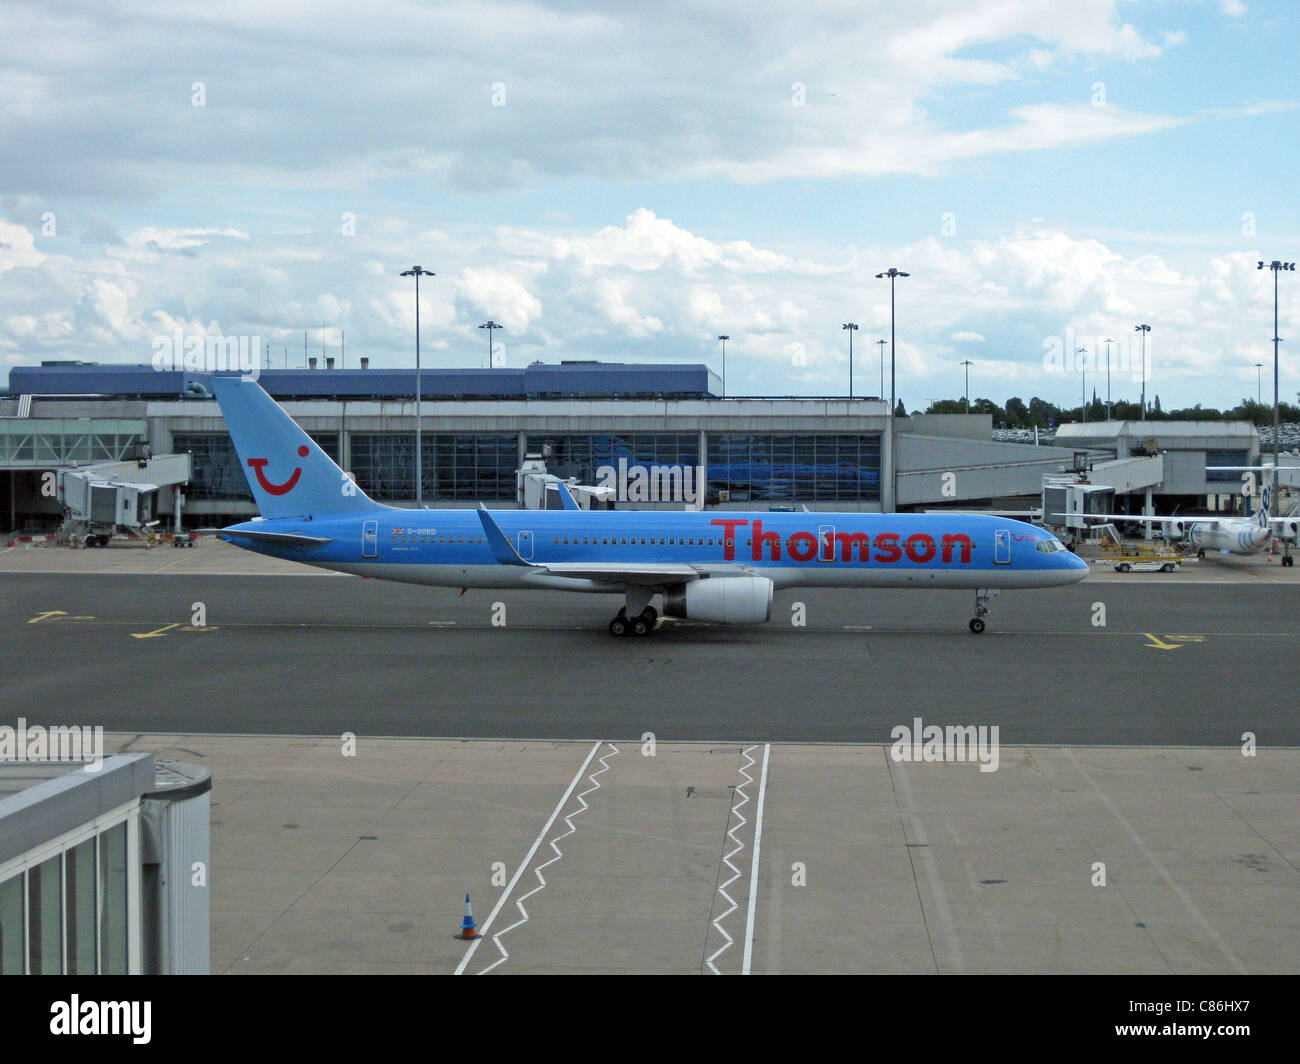 Thomson Airways Boeing 757-200 con blended winglet, numero di immatricolazione G-OOBD, l'Aeroporto Internazionale di Birmingham, Inghilterra, Regno Unito. Foto Stock